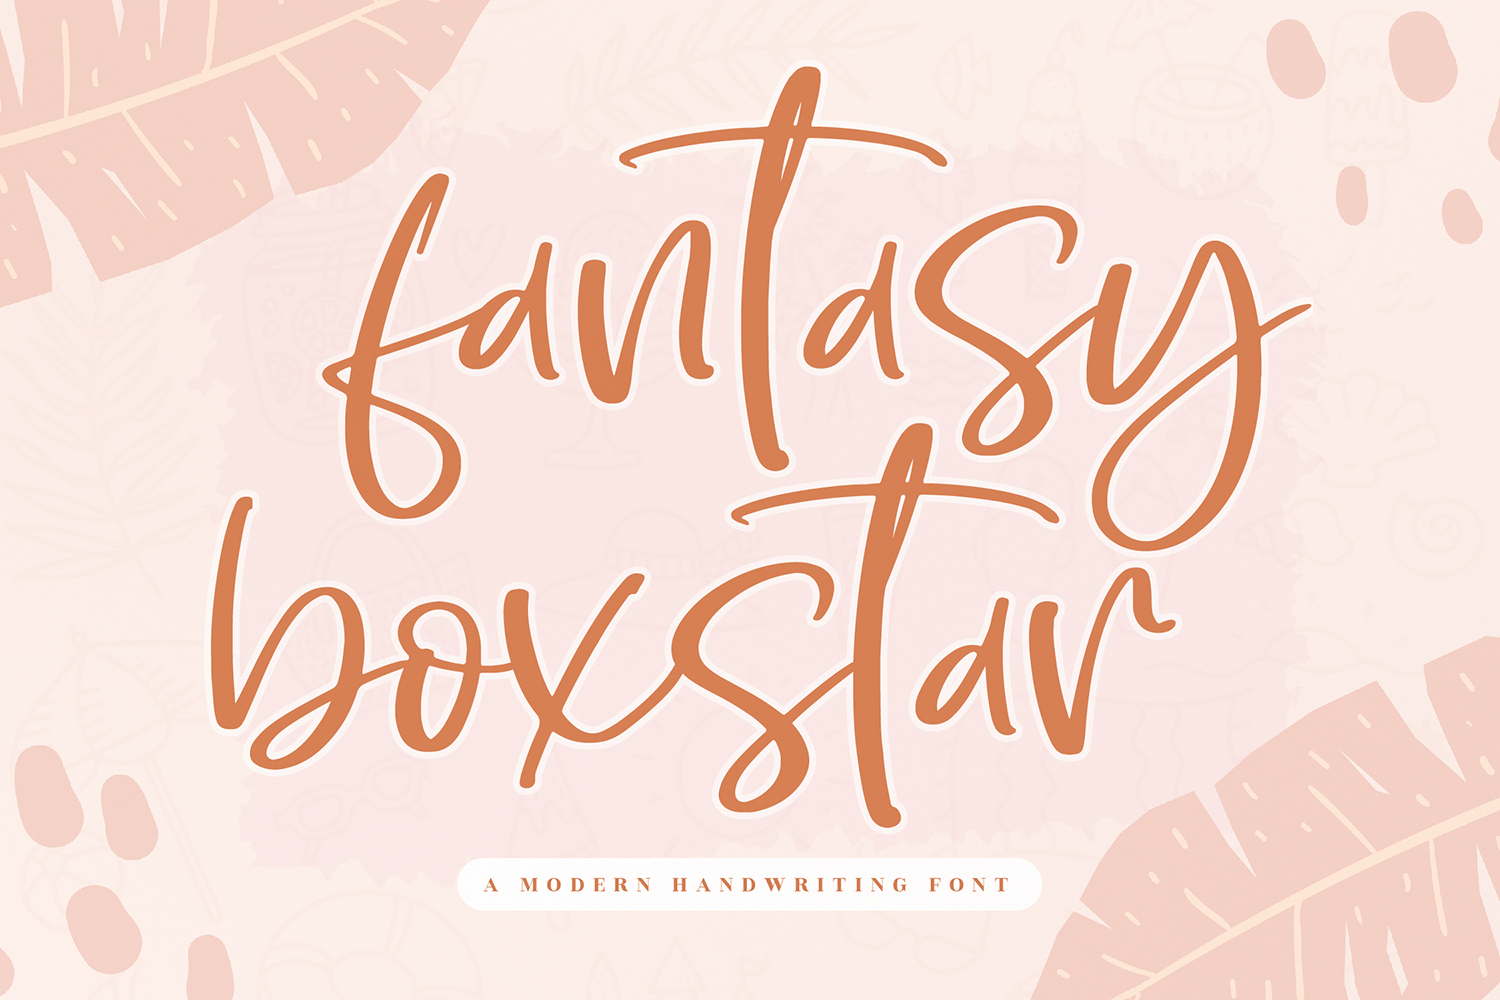 Fantasy Boxstar Free Font